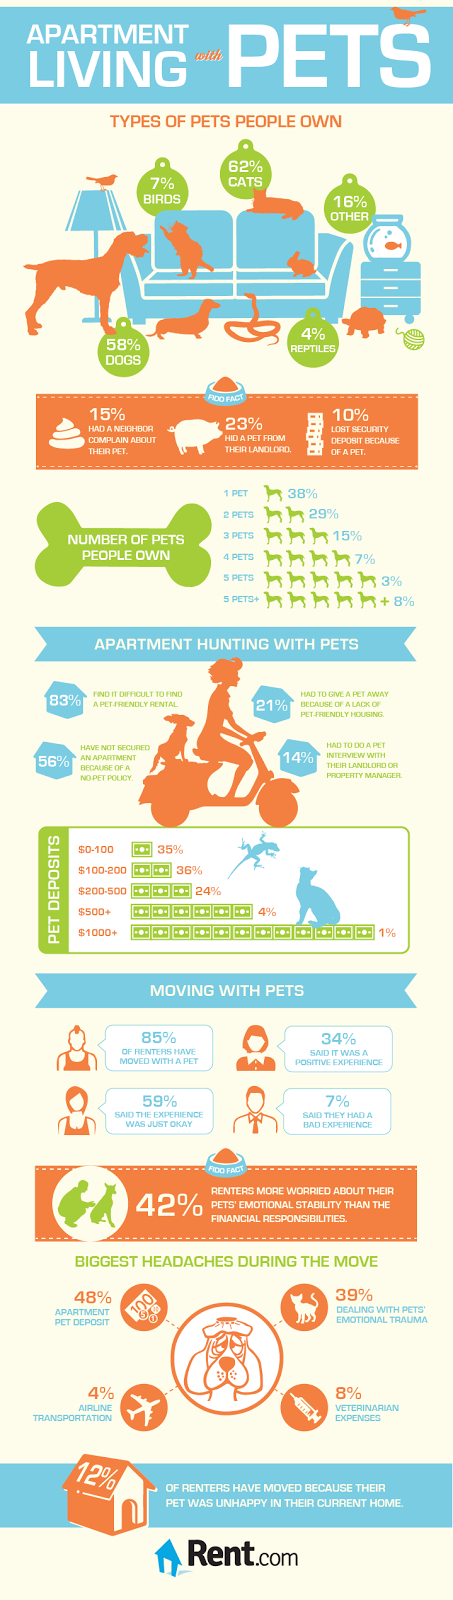 Apartamento com animais de estimação | Dicas para ajudar a reduzir o estresse durante uma mudança